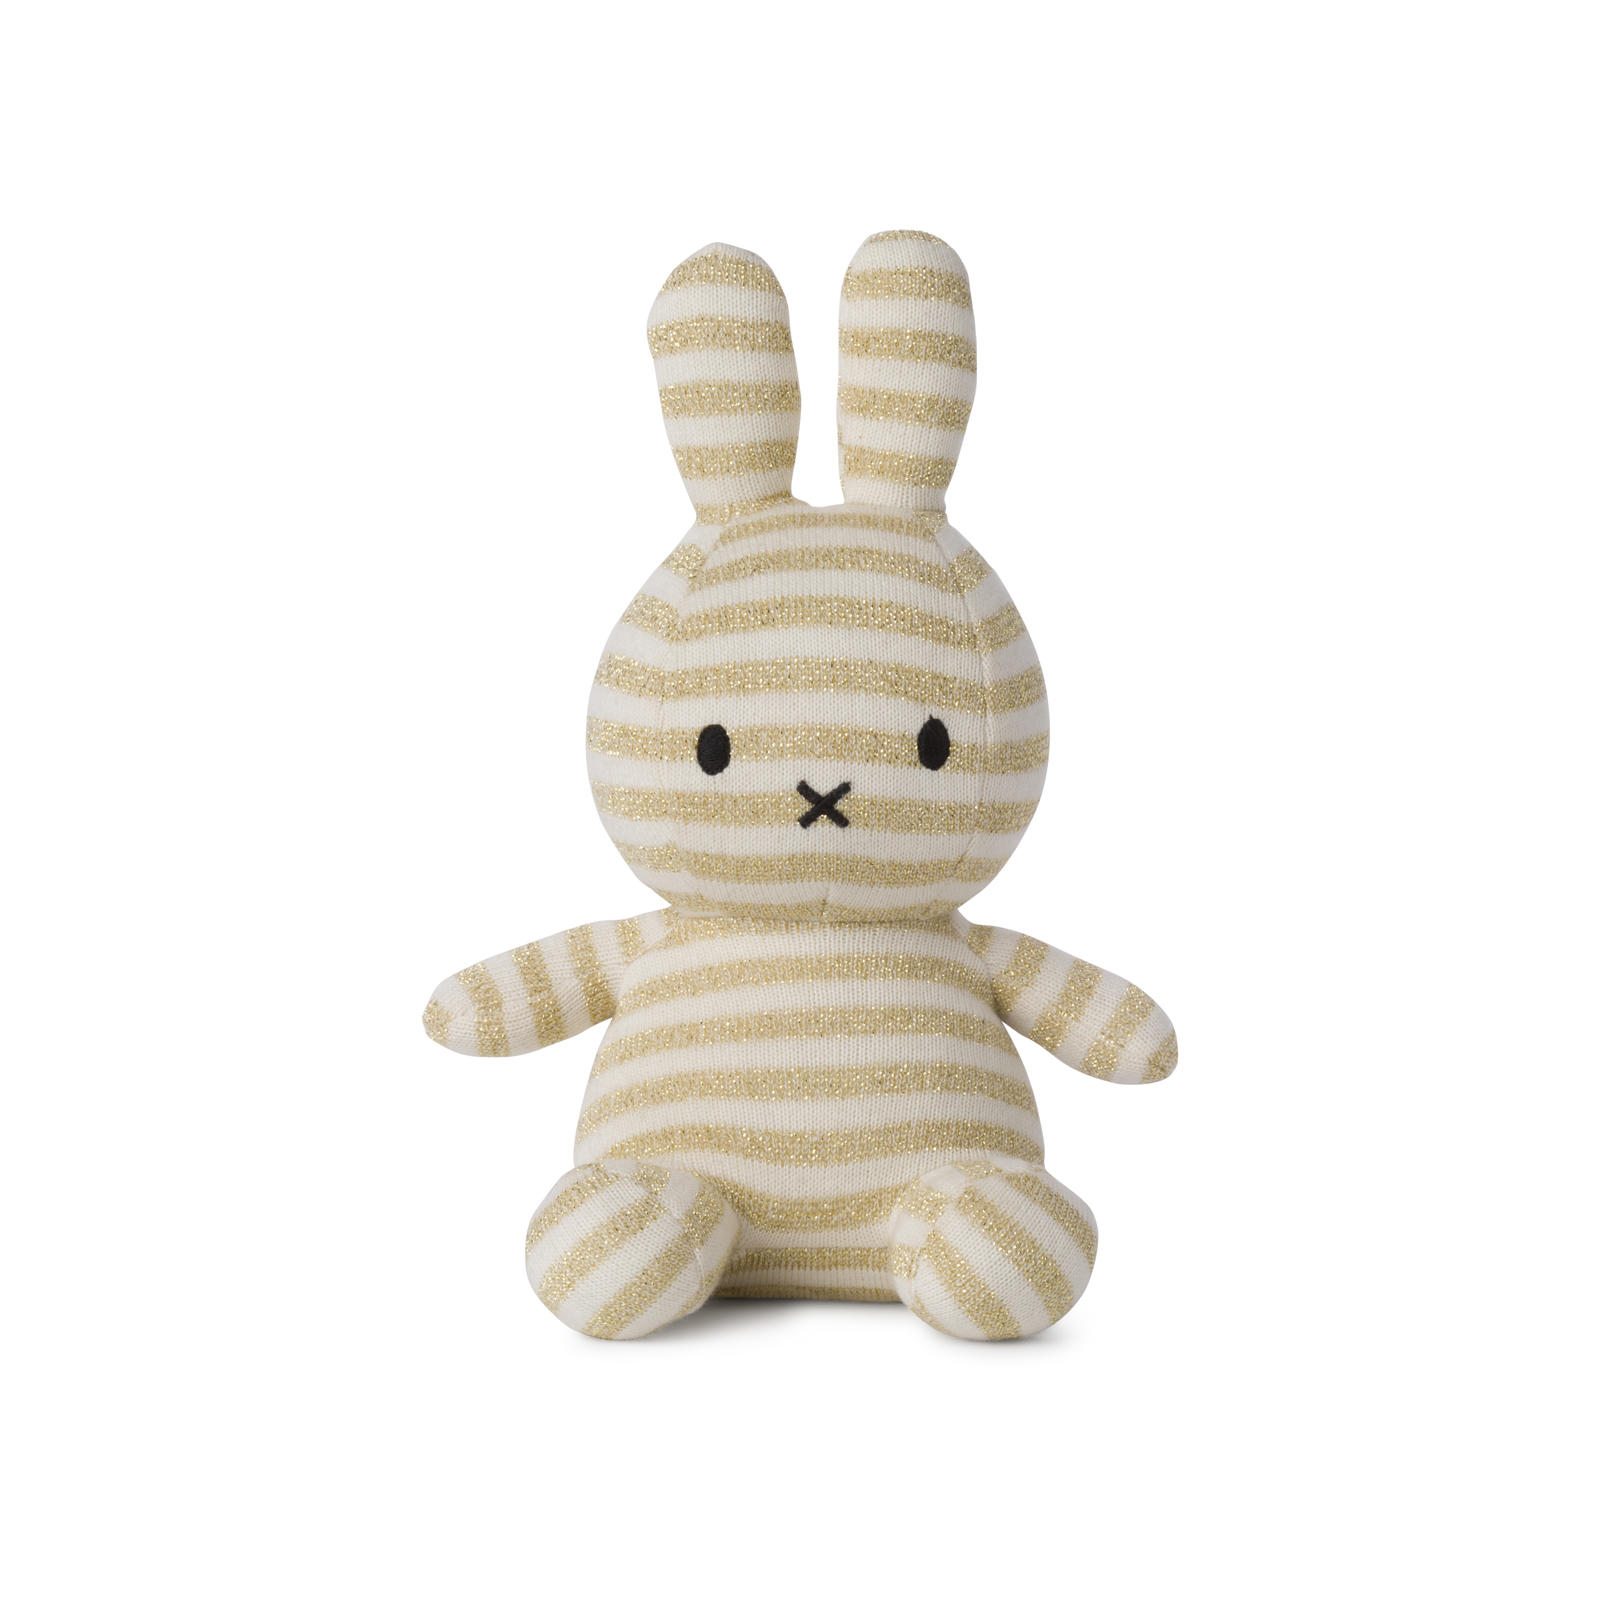 【BON TON TOYS】 Miffy(ミッフィー) Organic Cotton(オーガニックコットン) 23cm 6color